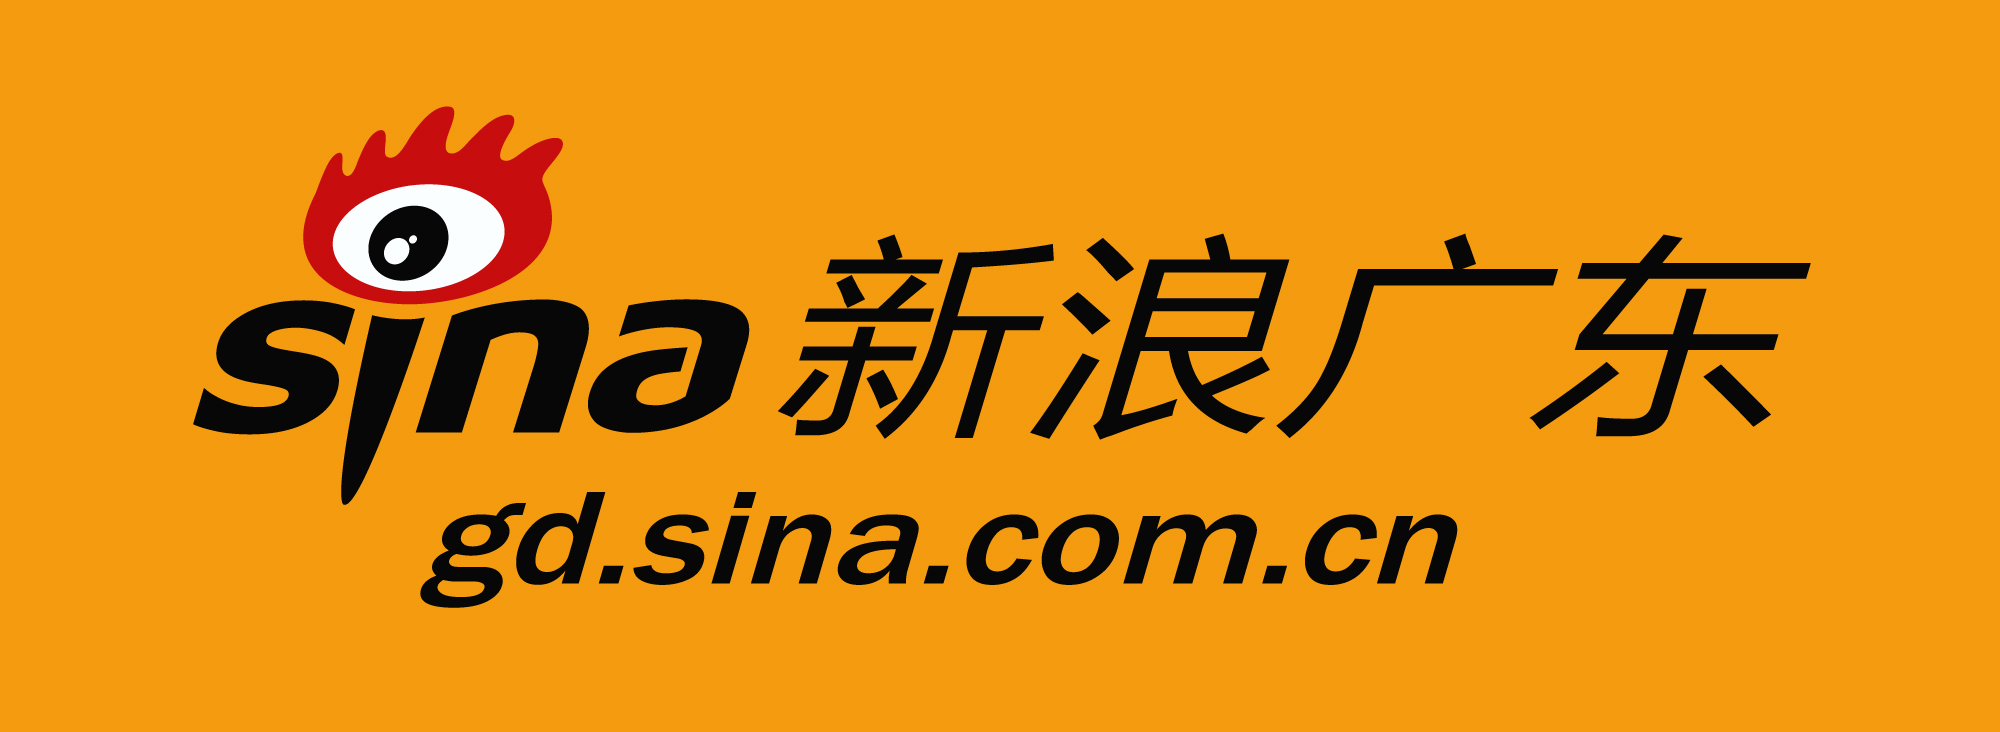 新浪廣東logo